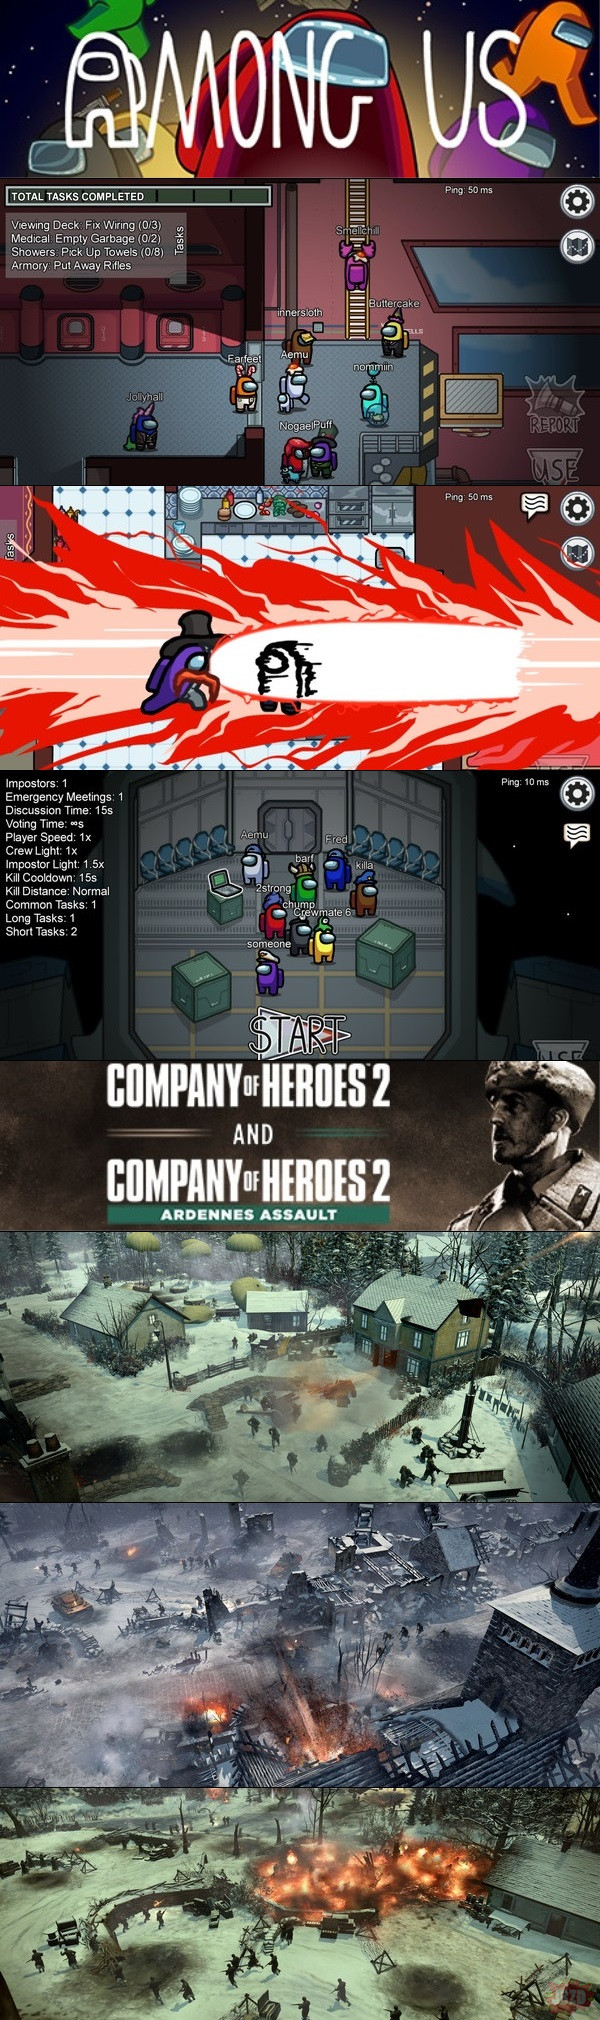 Among Us za darmo w epic games store oraz Company of Heroes 2 + dodatek Ardennes Assault za darmo na Steamie